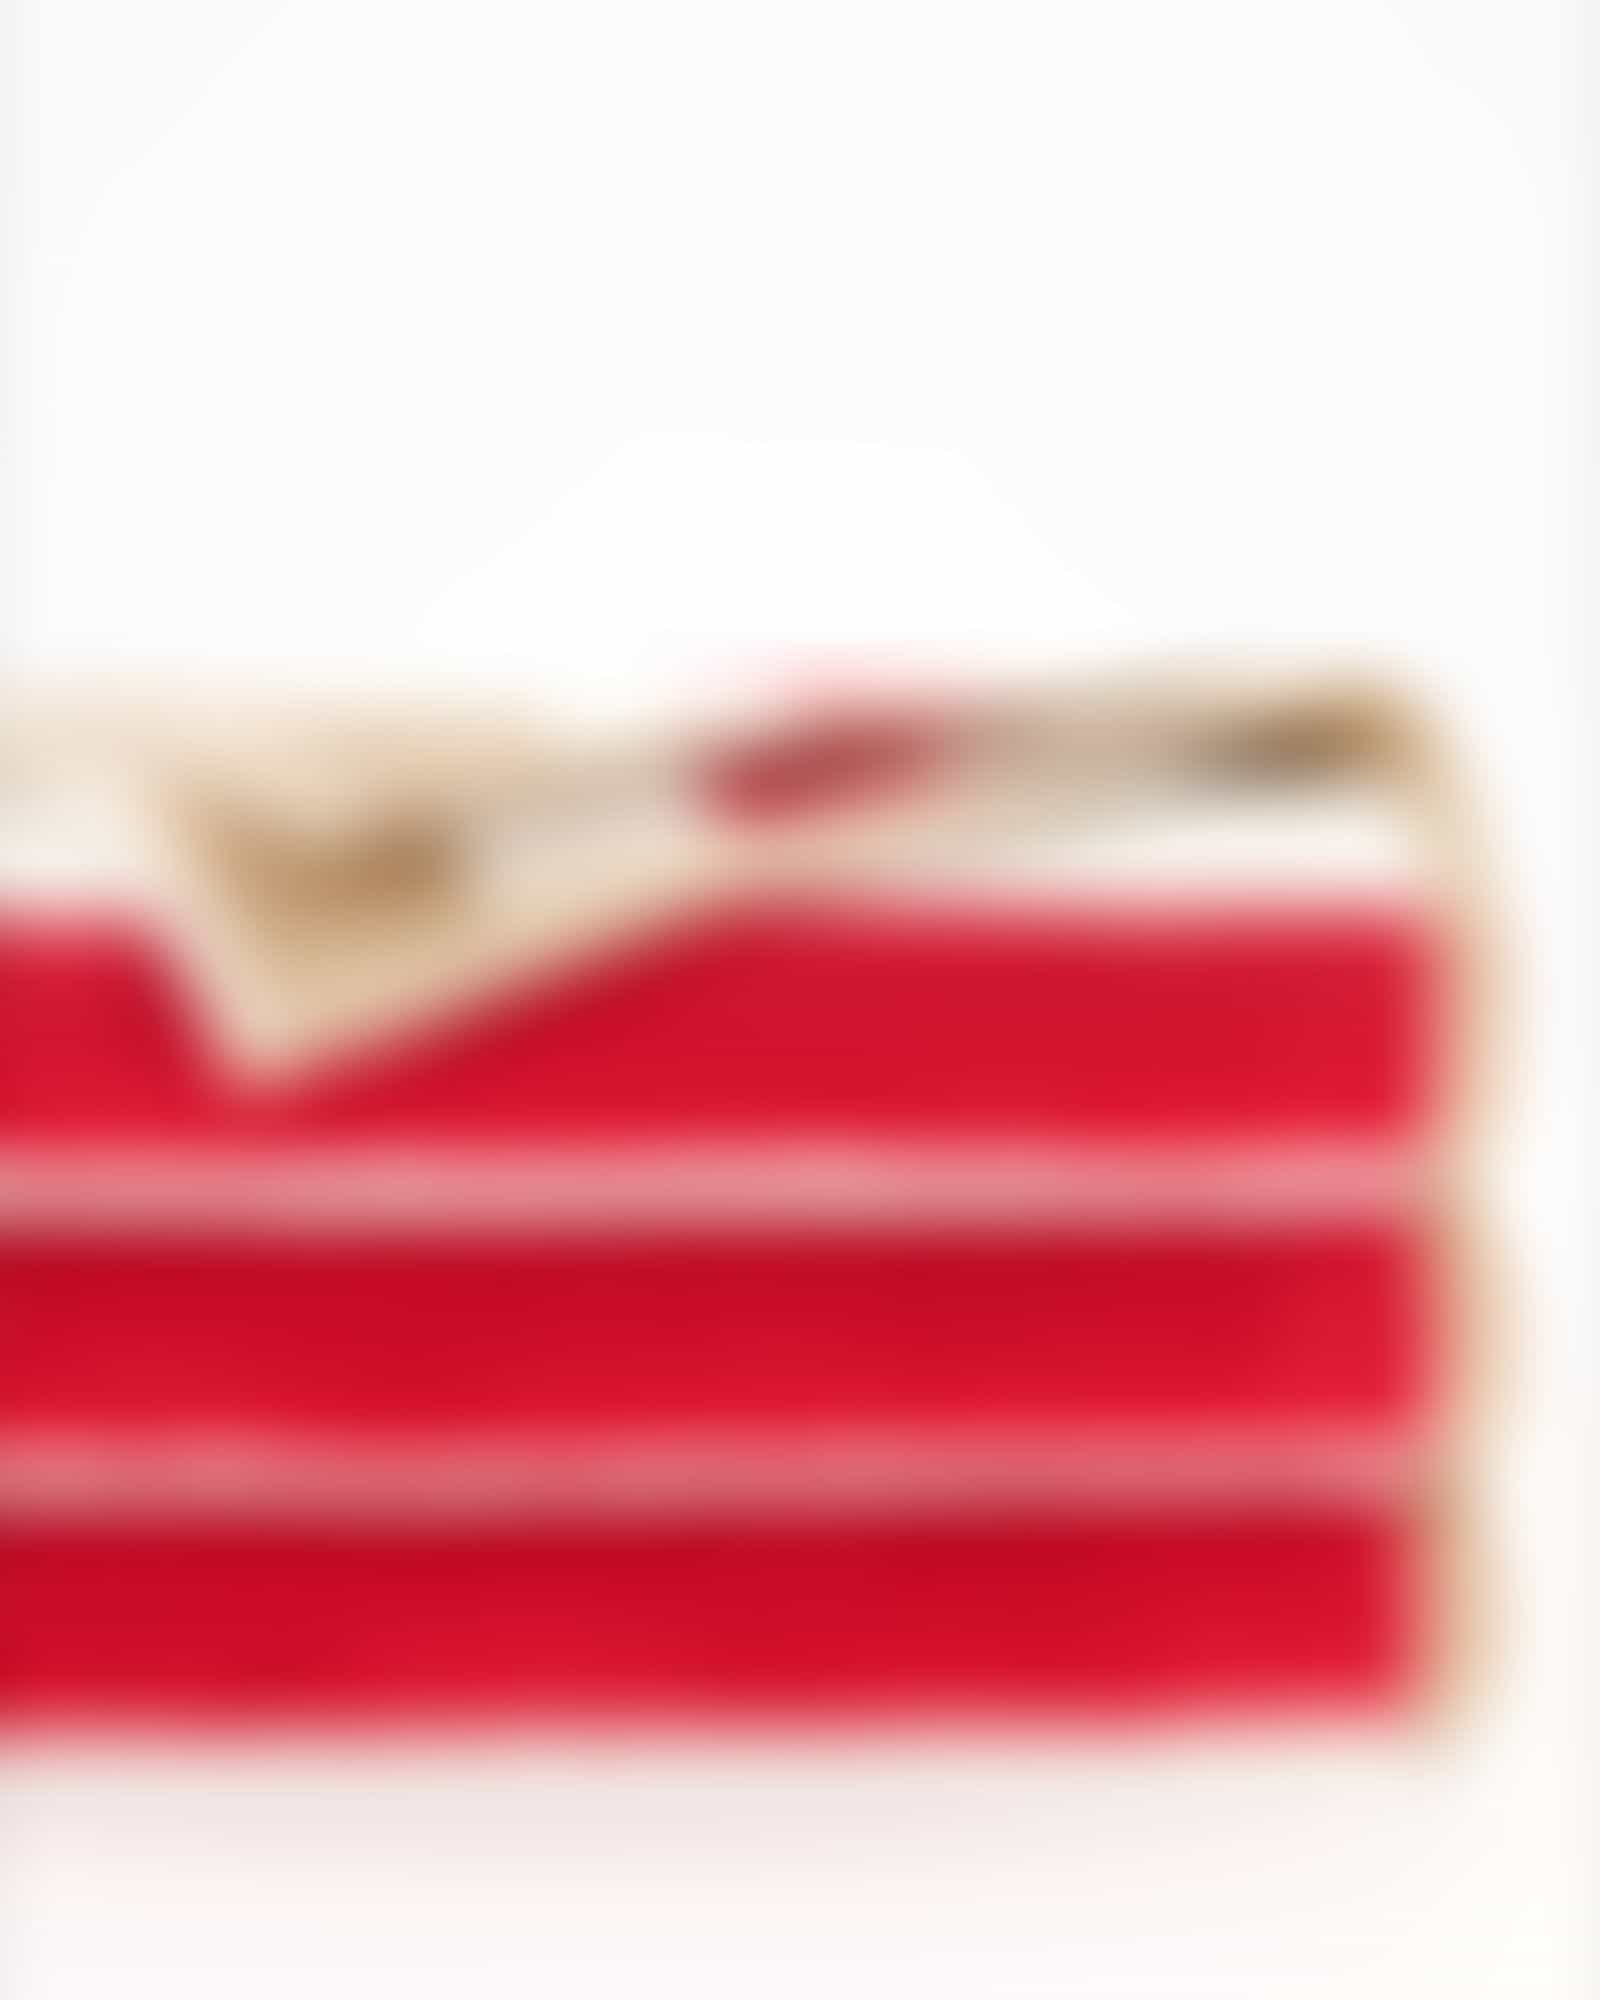 Cawö Handtücher Coast Stripes 6213 - Farbe: rot-natur - 32 - Duschtuch 70x140 cm